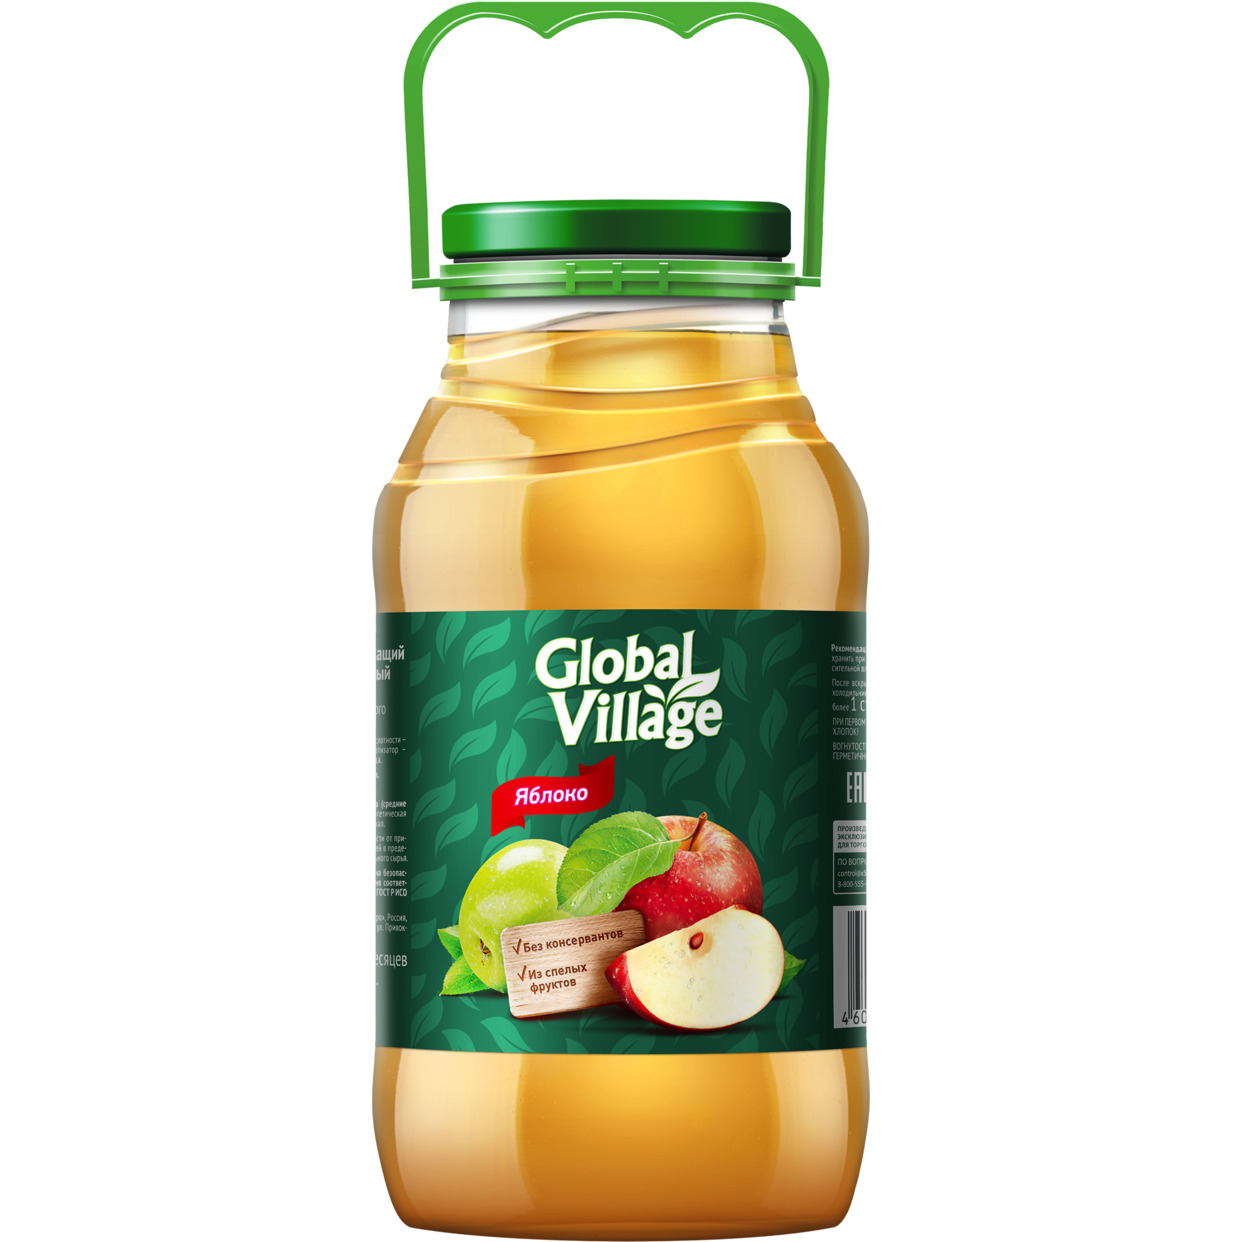 Напиток сокосодержащий яблочный осветленный для детского питания детей дошкольного и школьного возраста от 3-х лет и старше, Global Village, 1.8 л